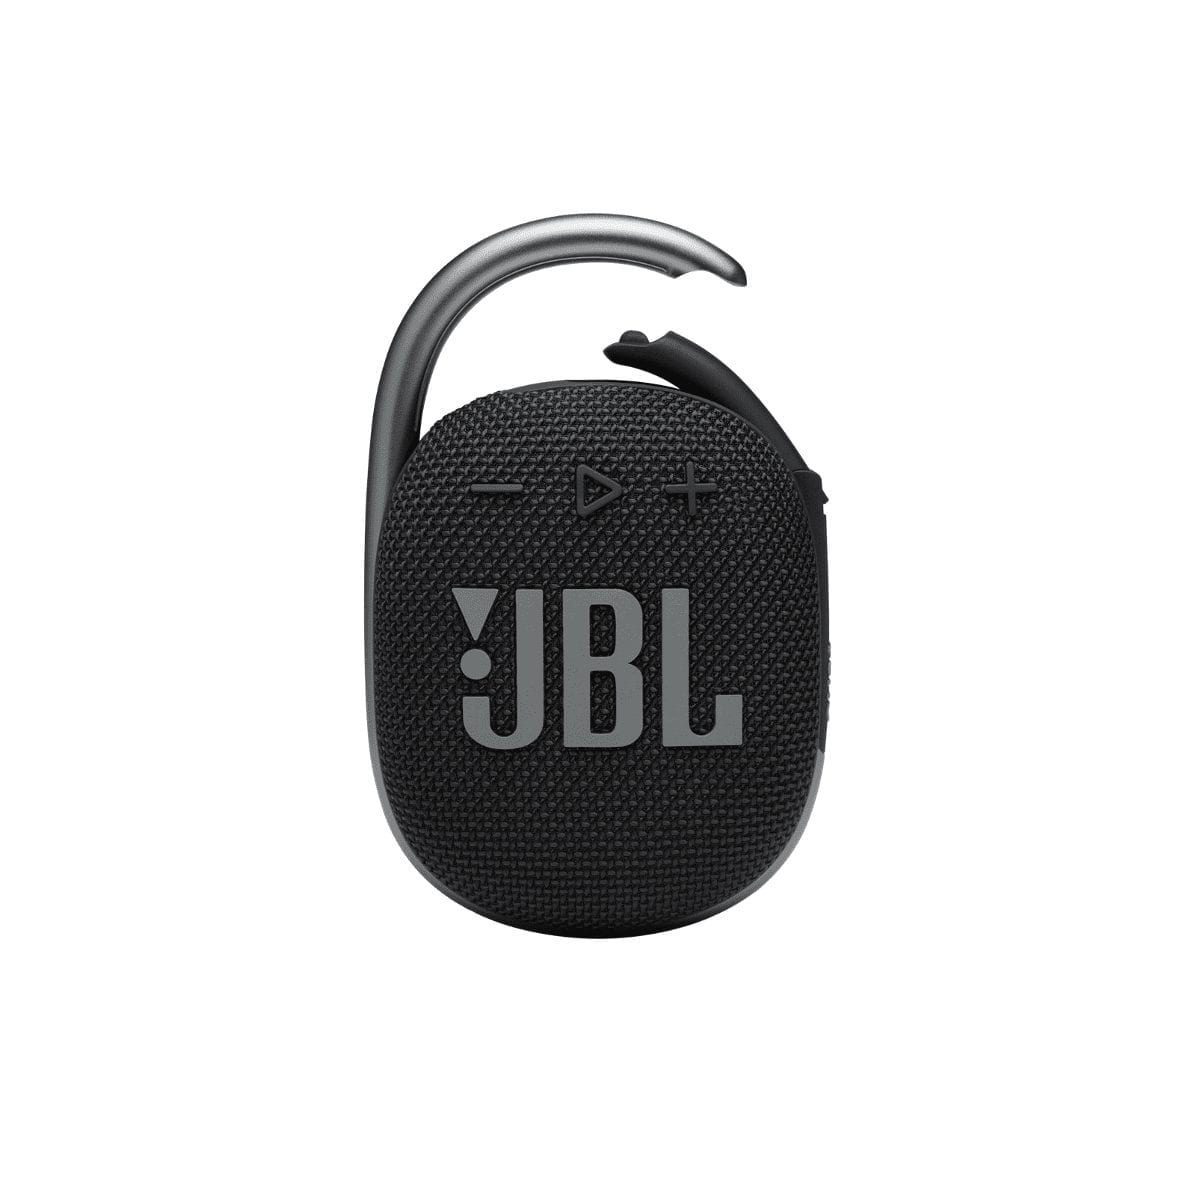 Компактные портативные колонки JBL Clip 4 Black компактные портативные колонки defunc mondo bt speaker large gold black